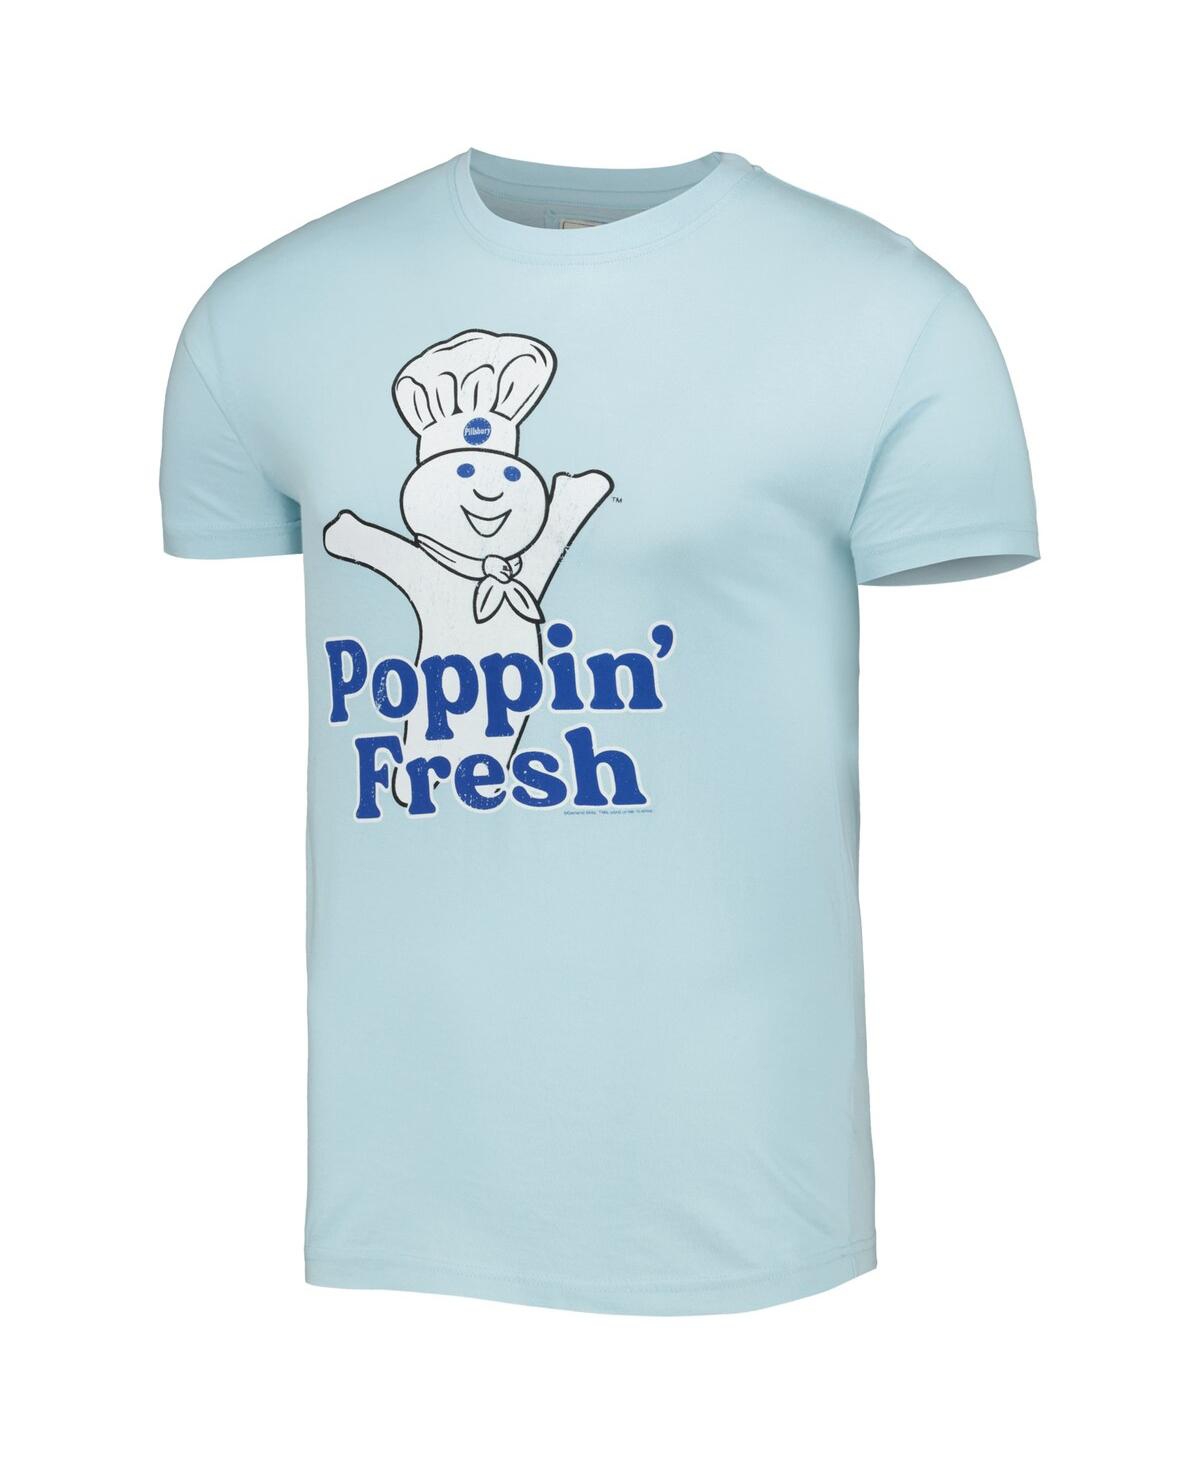 Shop American Needle Men's And Women's  Light Blue Pillsbury Doughboy Brass Tacks T-shirt